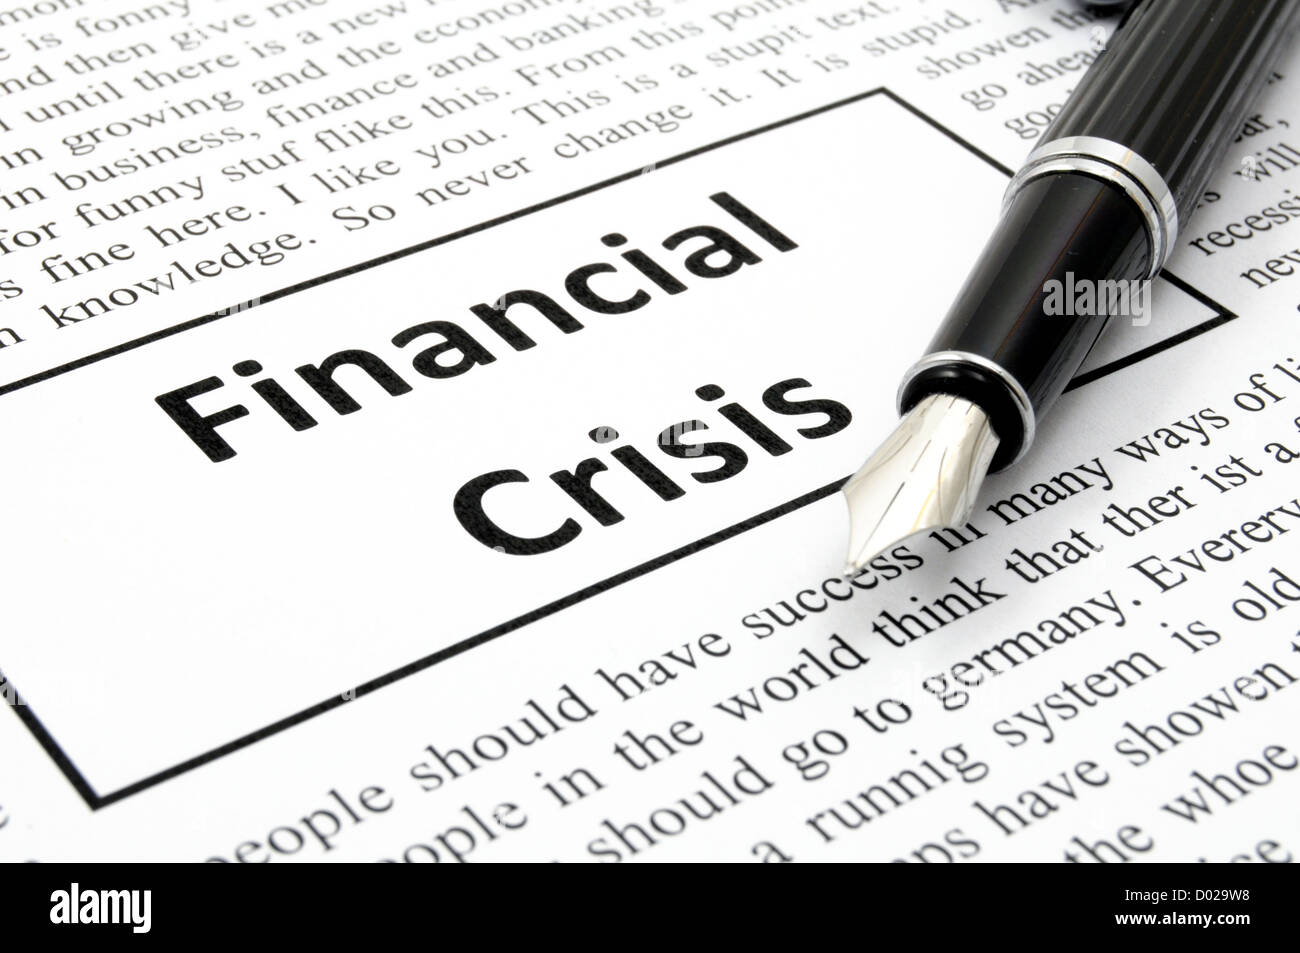 Finanzkrise-Konzept mit gefälschten Zeitung zeigt wirtschaftliche Abschwung Stockfoto